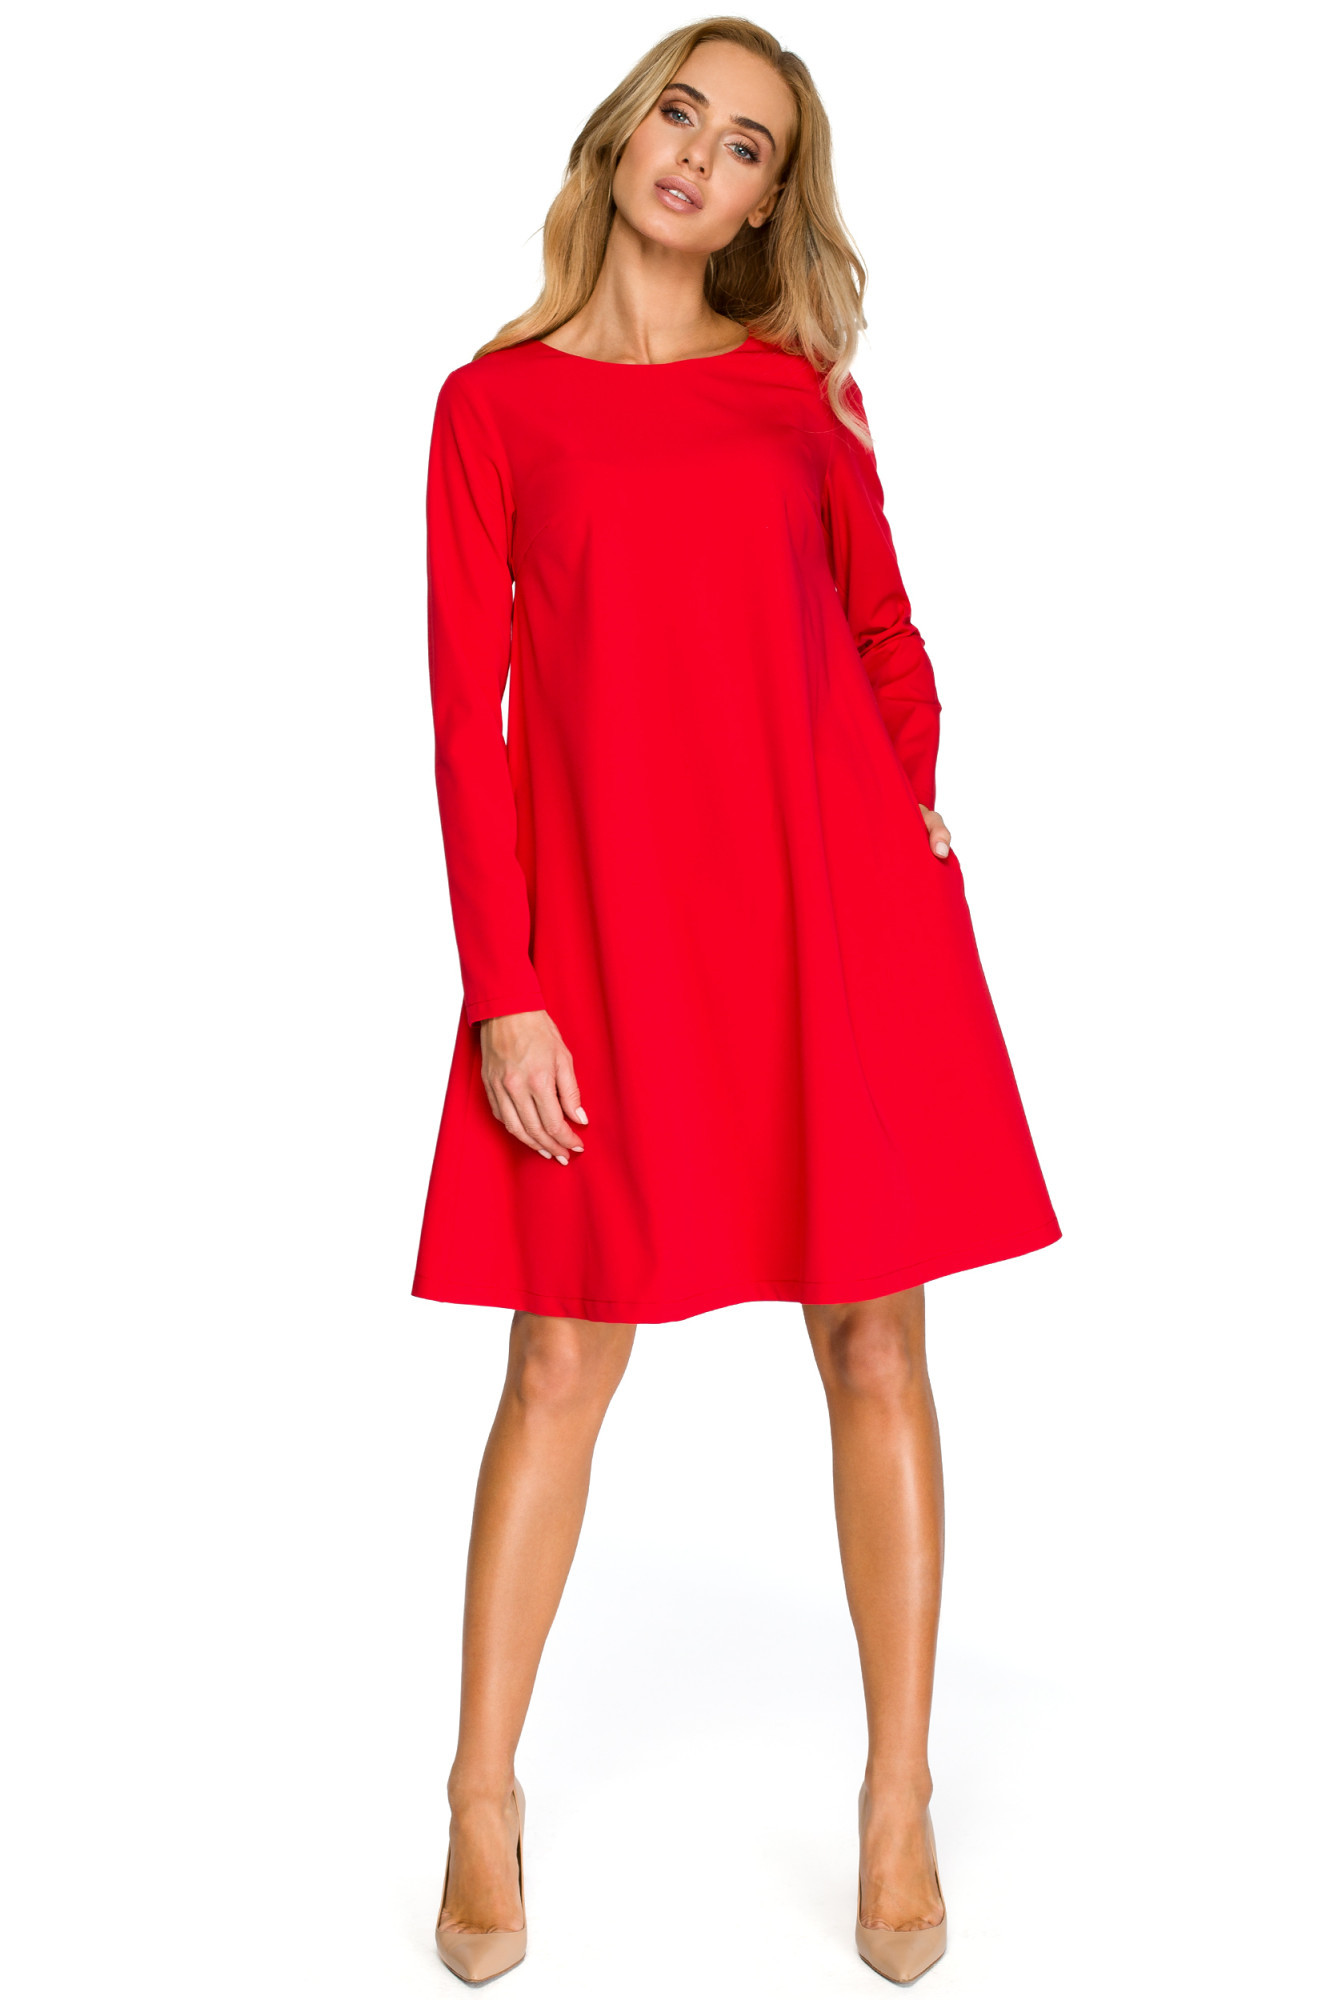 Dámské šaty S137 červené - Stylove S